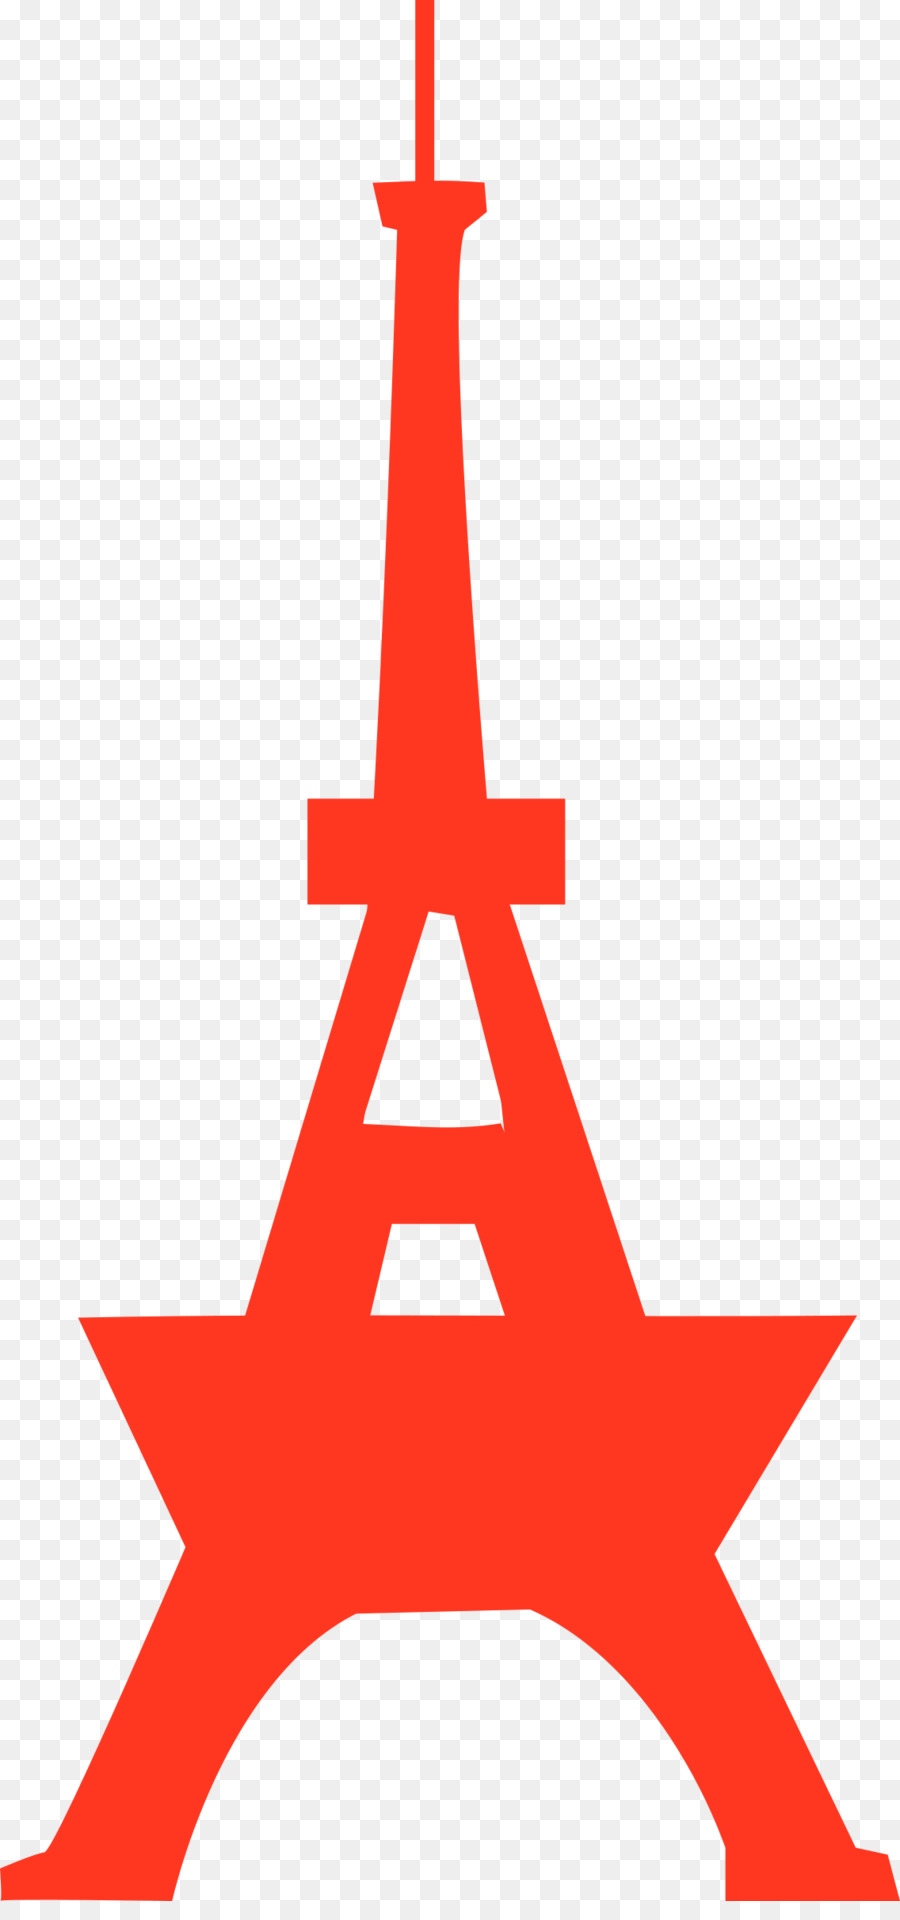 Torre di Tokyo Clip art Torre Eiffel Immagine Portable Network Graphics - indovinare il segno